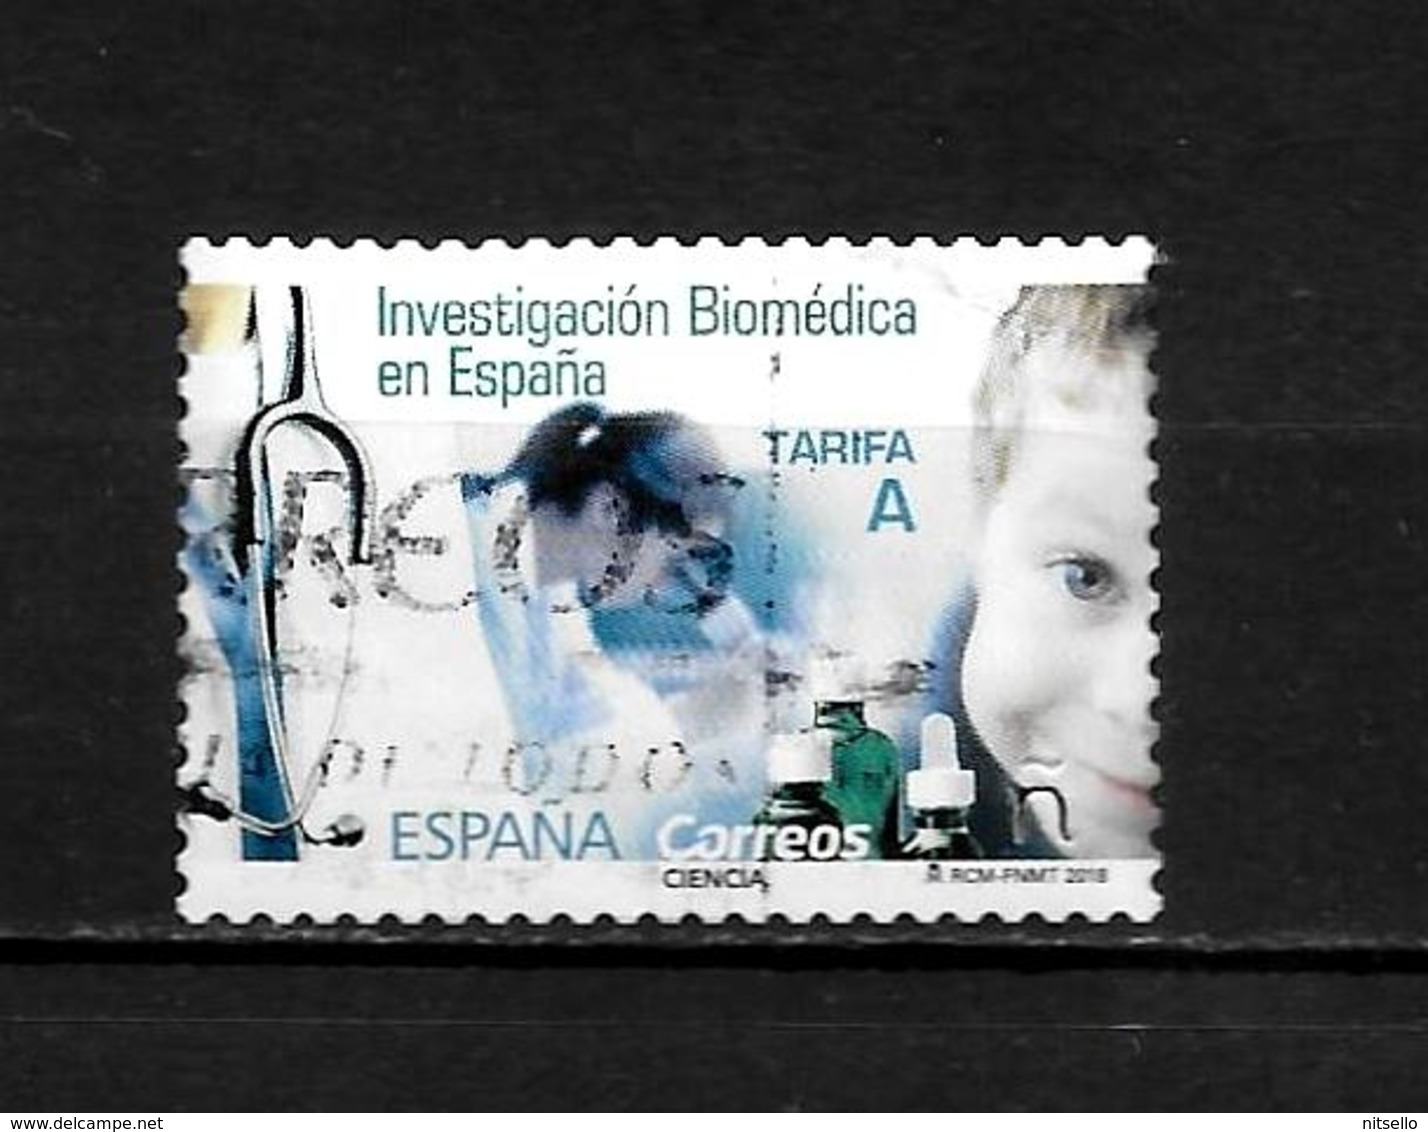 LOTE 2030 ///  ESPAÑA 2018   INVESTIGACION BIOMEDICA EN ESPAÑA  ¡¡¡ OFERTA - LIQUIDATION !!! JE LIQUIDE !!! - Used Stamps